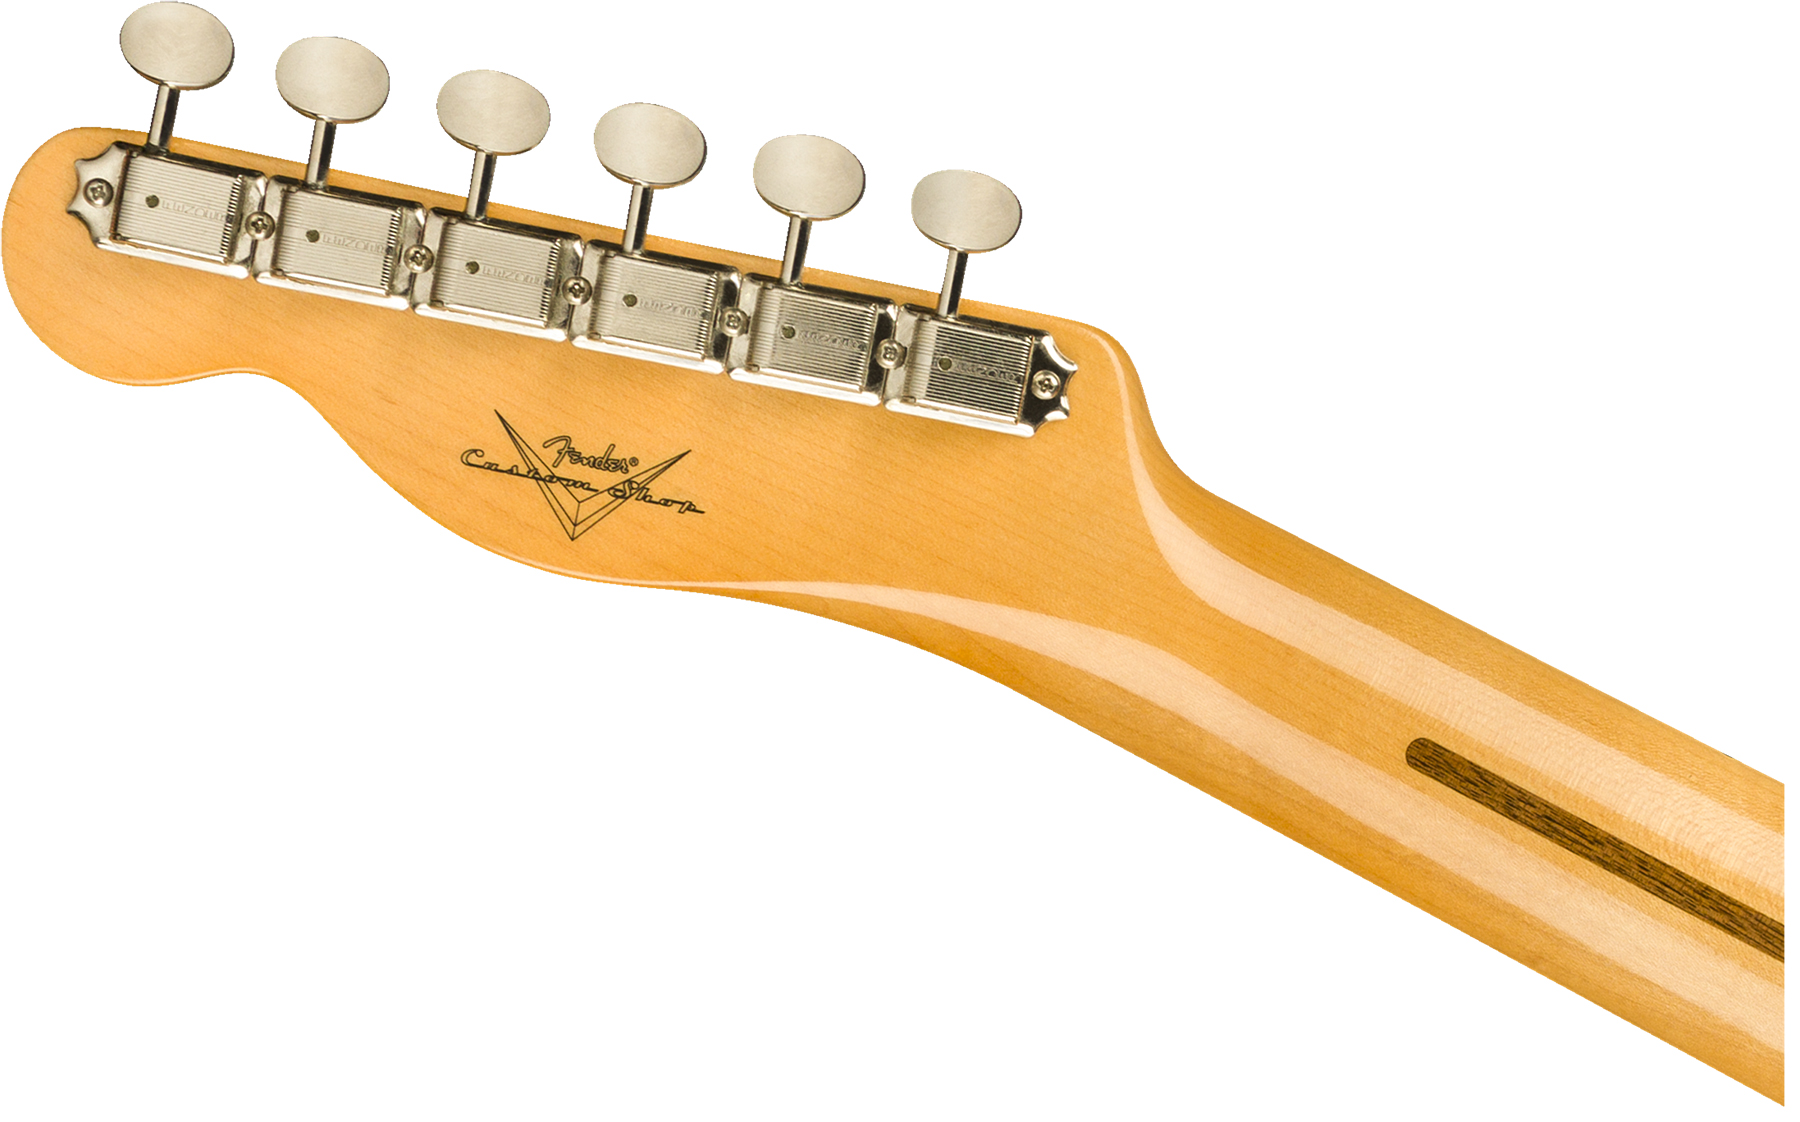 Bermad Bont aflevering Solid body elektrische gitaar Fender Custom Shop Vintage Custom 1958  Top-Load Telecaster - nos aged white blonde wit